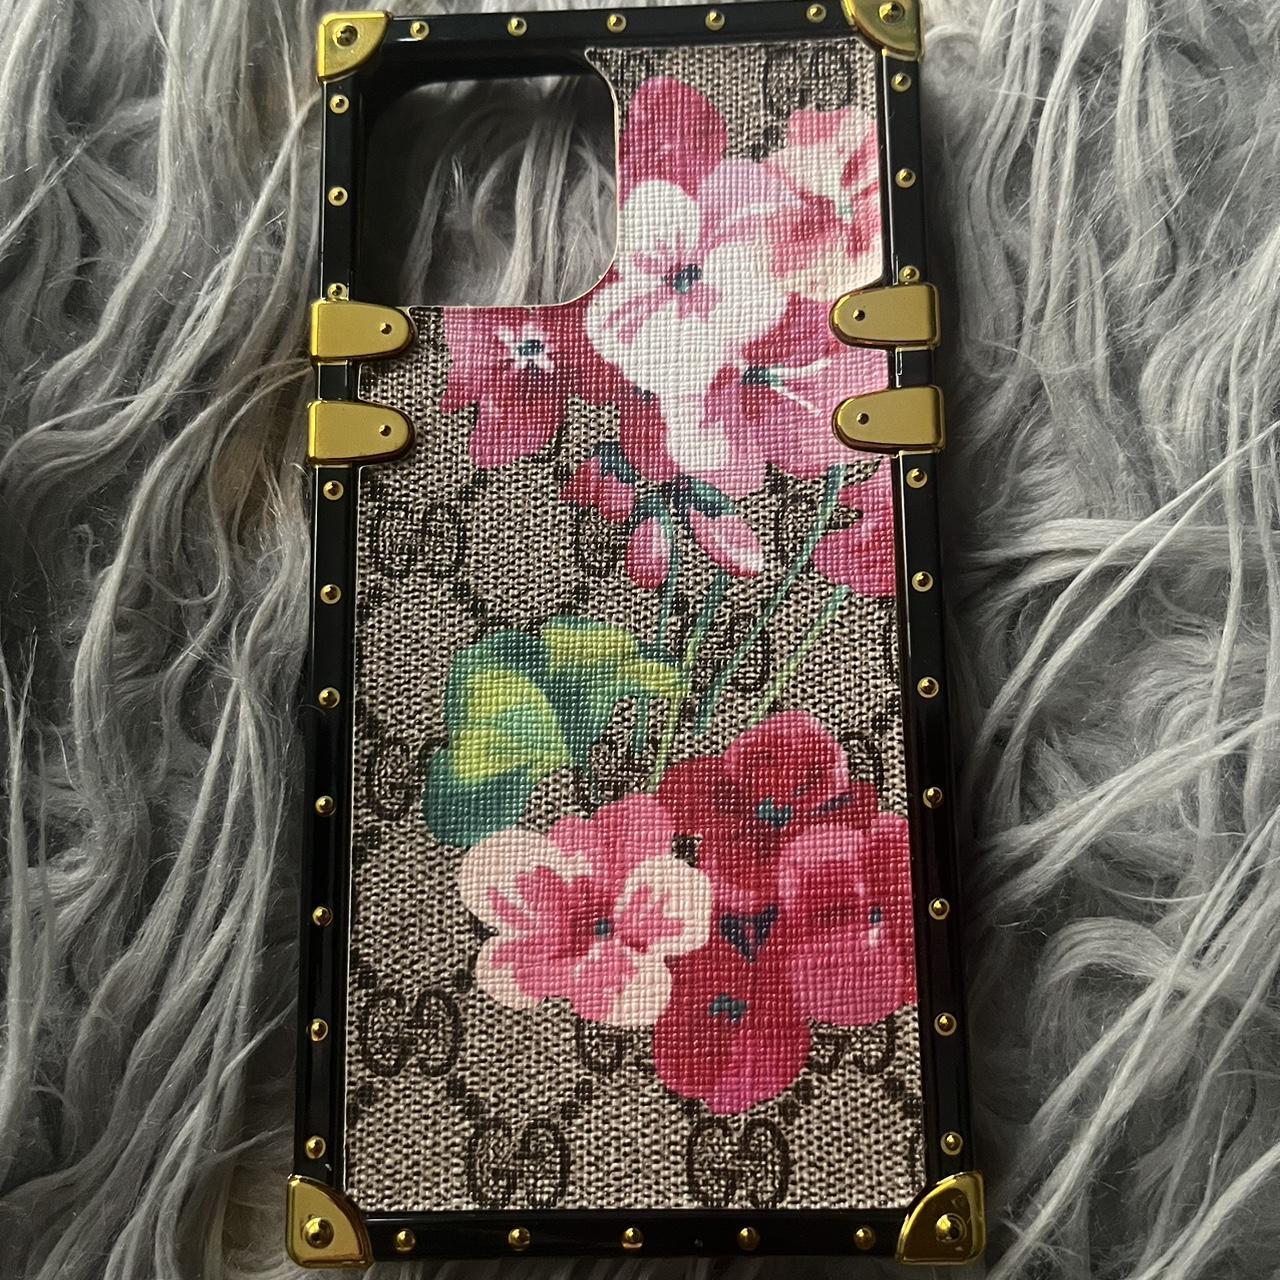 Gucci iPhone Case 